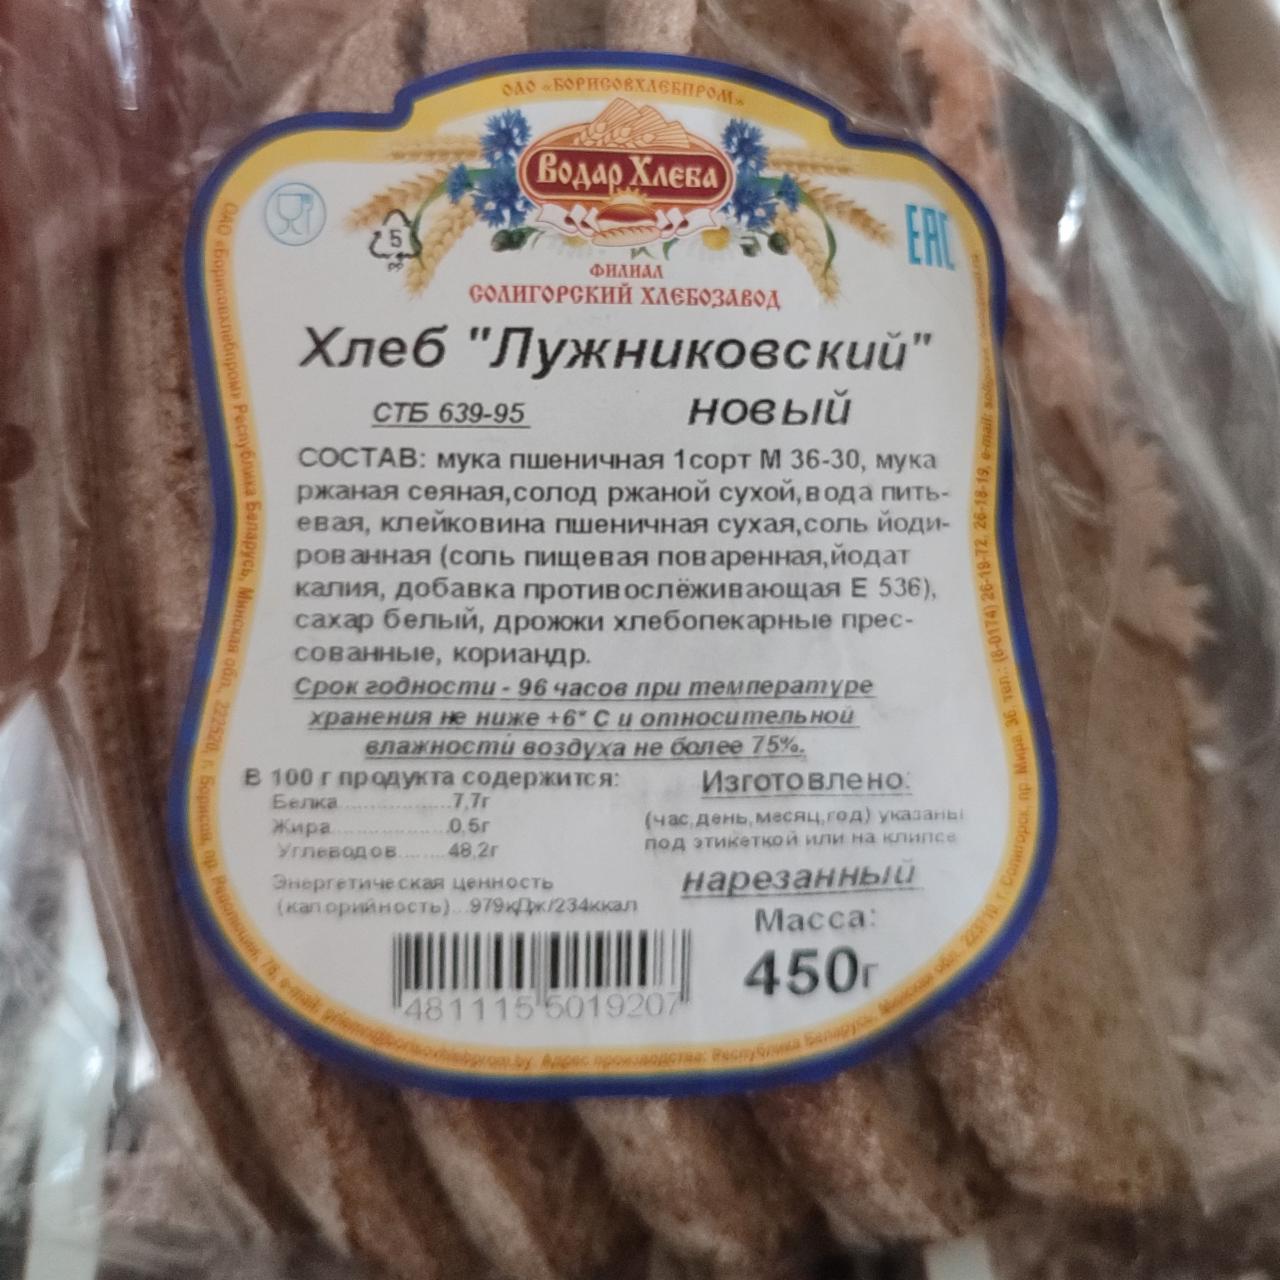 Фото - хлеб Лужниковский новый Водар хлеба